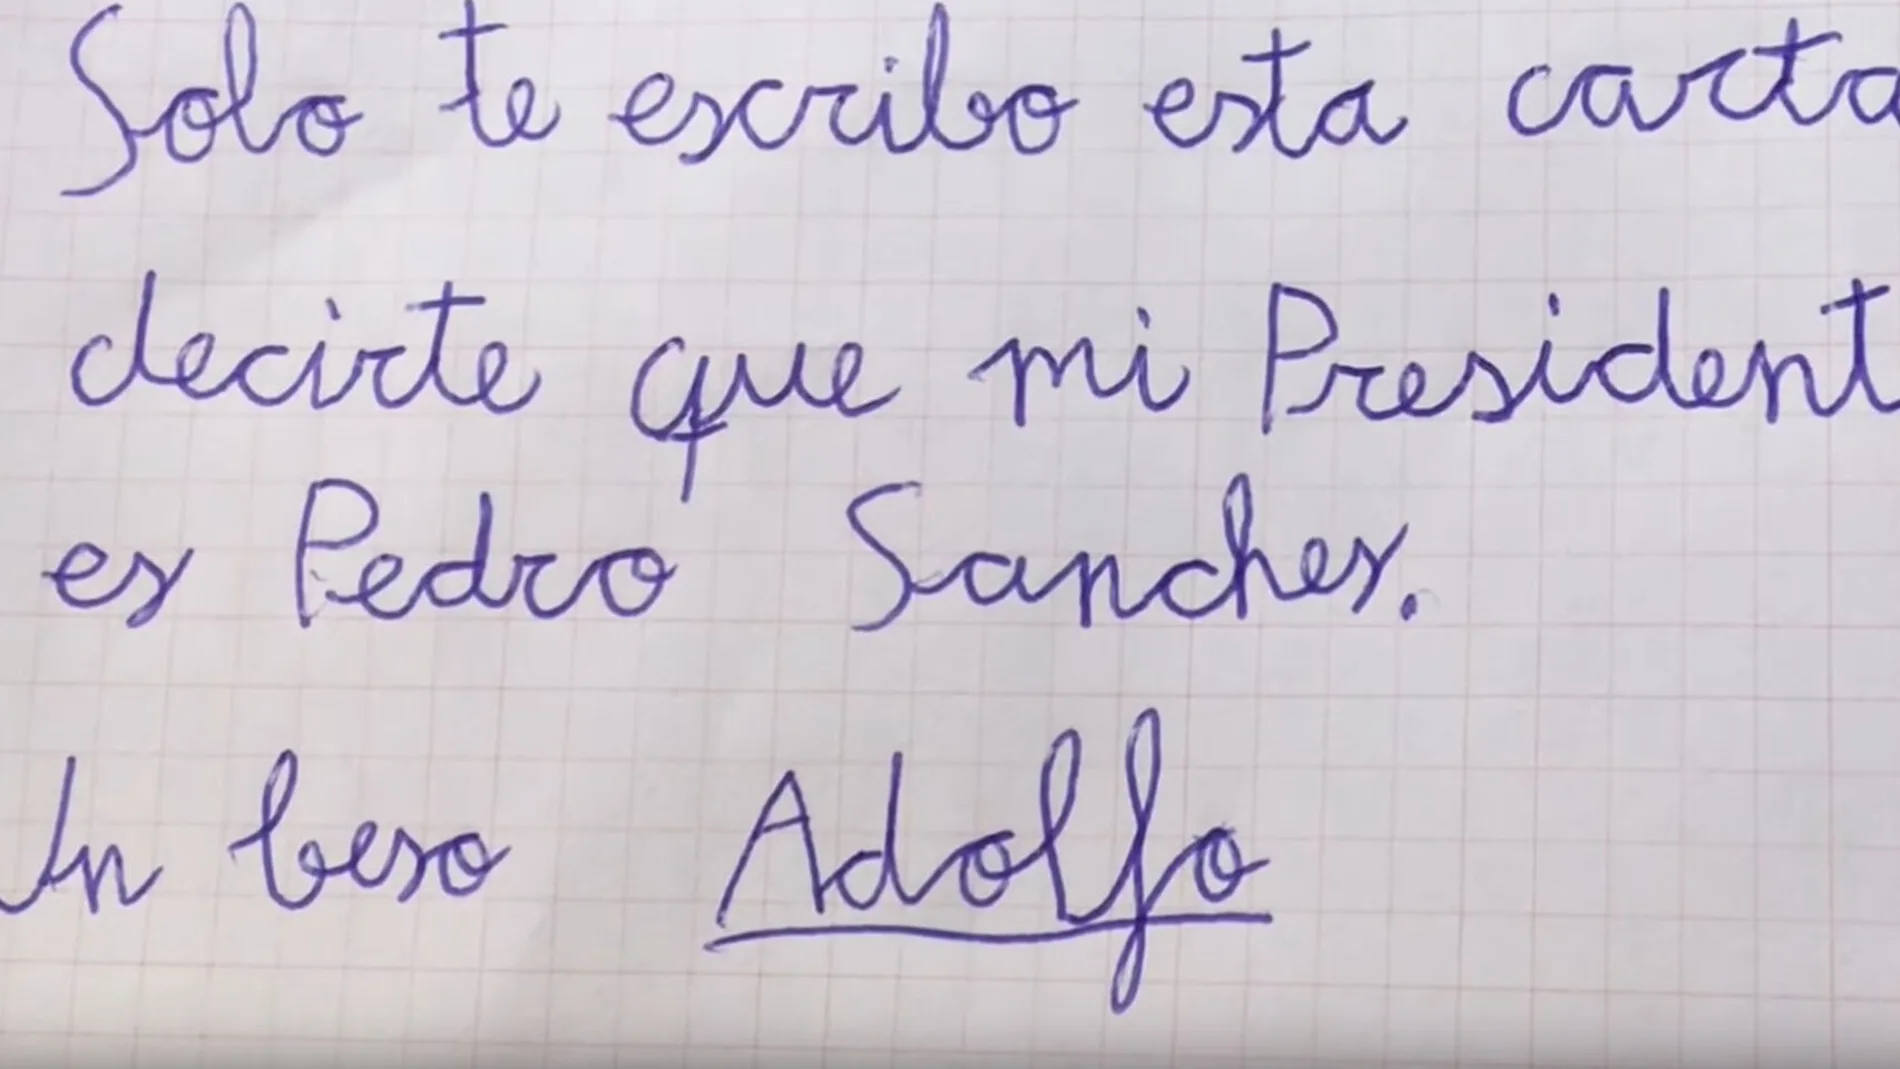 Extracto de la carta de Adolfo, el niño del vídeo